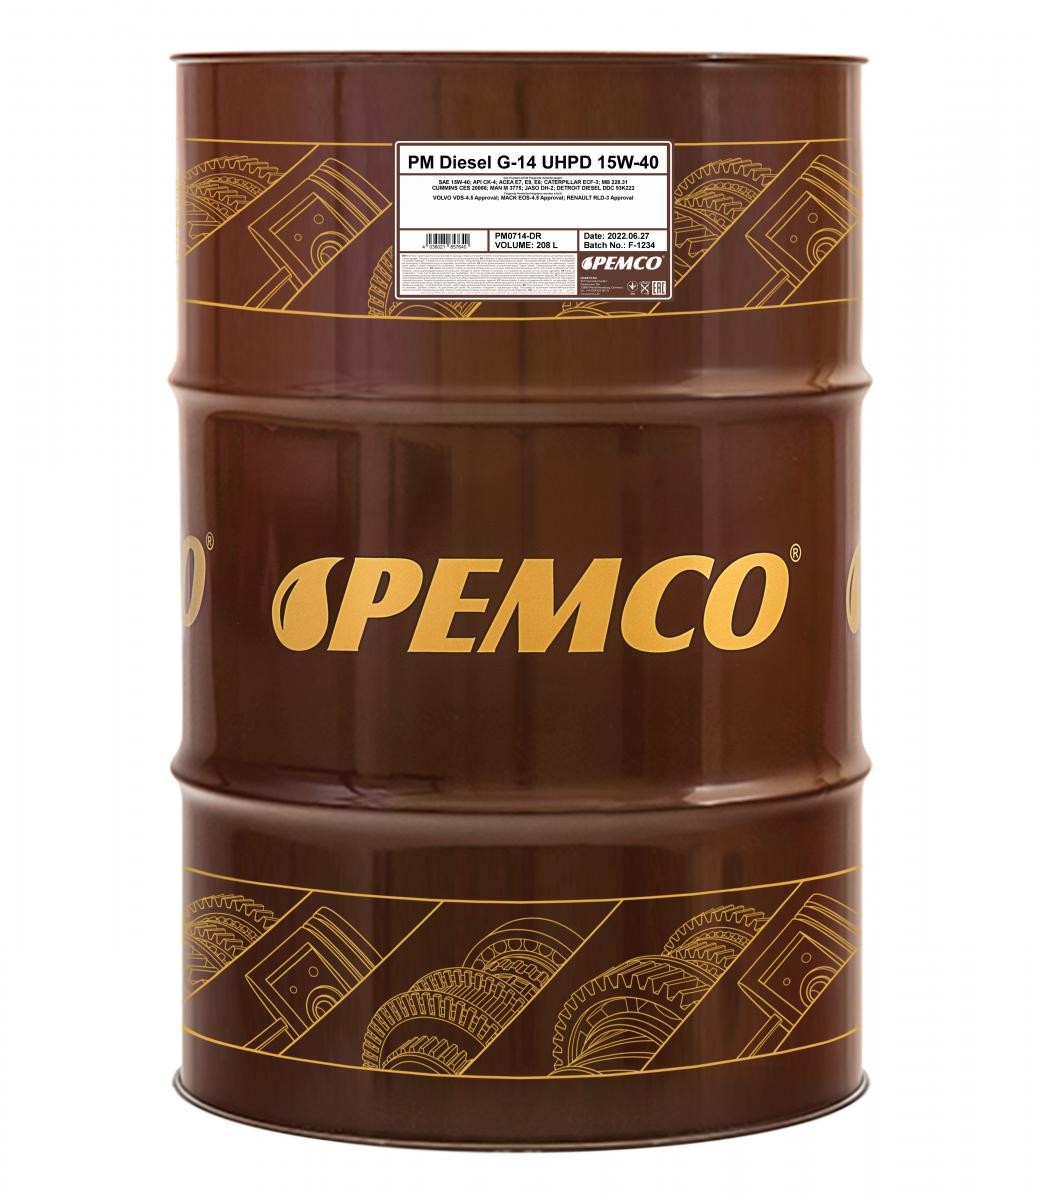 Comprare PM0714-DR PEMCO Truck UHPD, DIESEL G-14 15W-40, 208l, Olio sintetico Olio motore PM0714-DR poco costoso